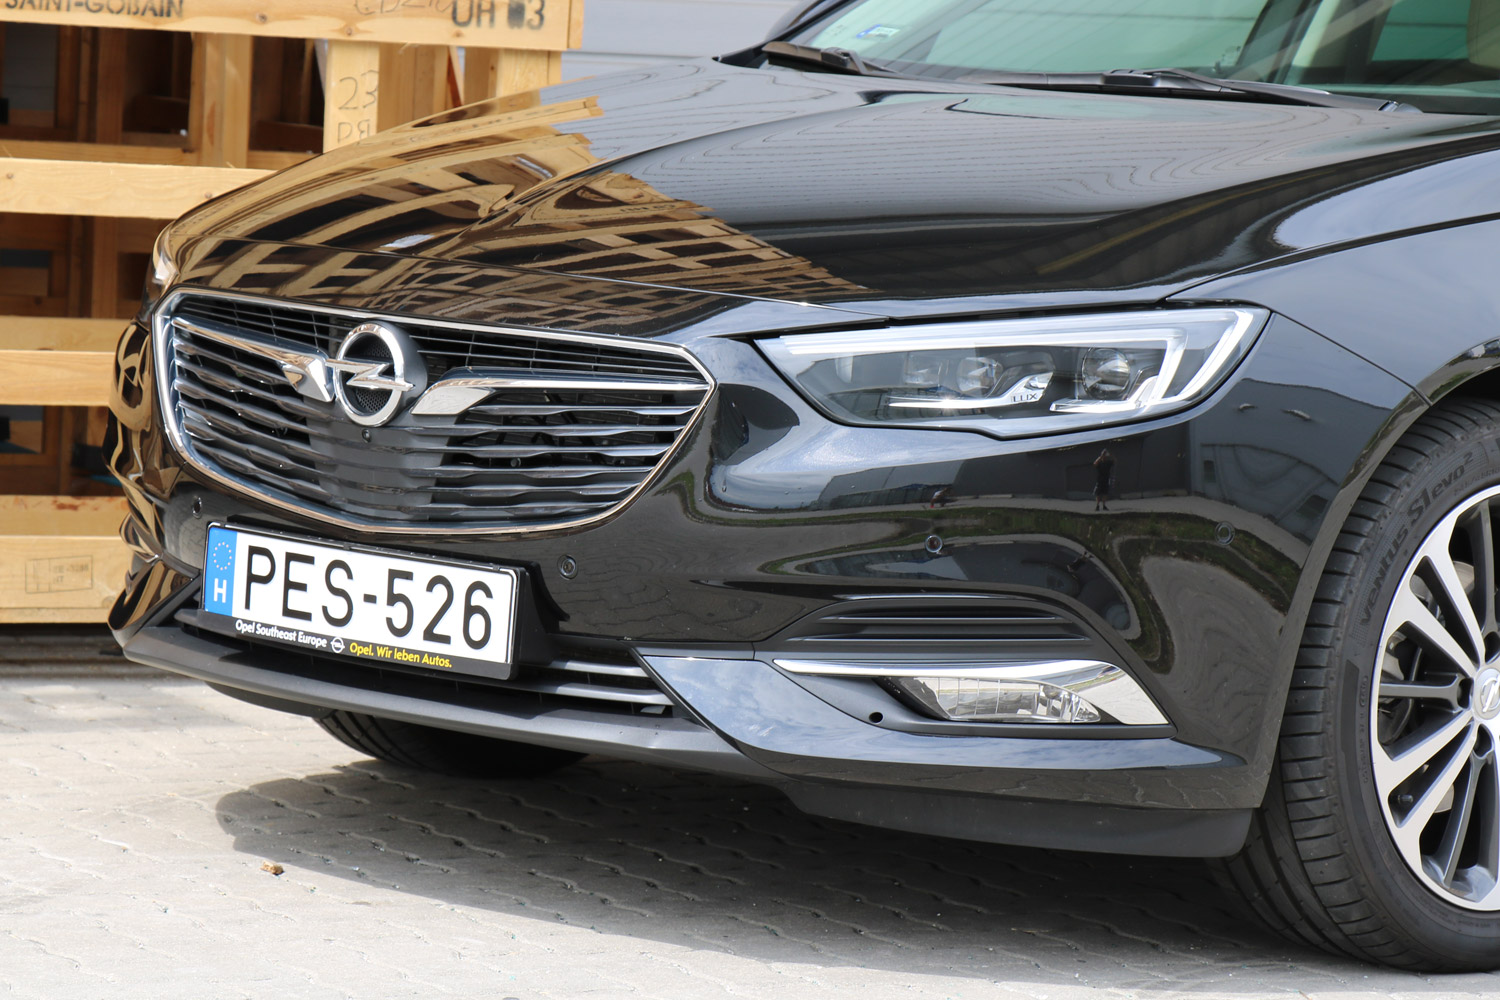 Itthon teszteltük, mit ér az Opel csúcsmodellje 7